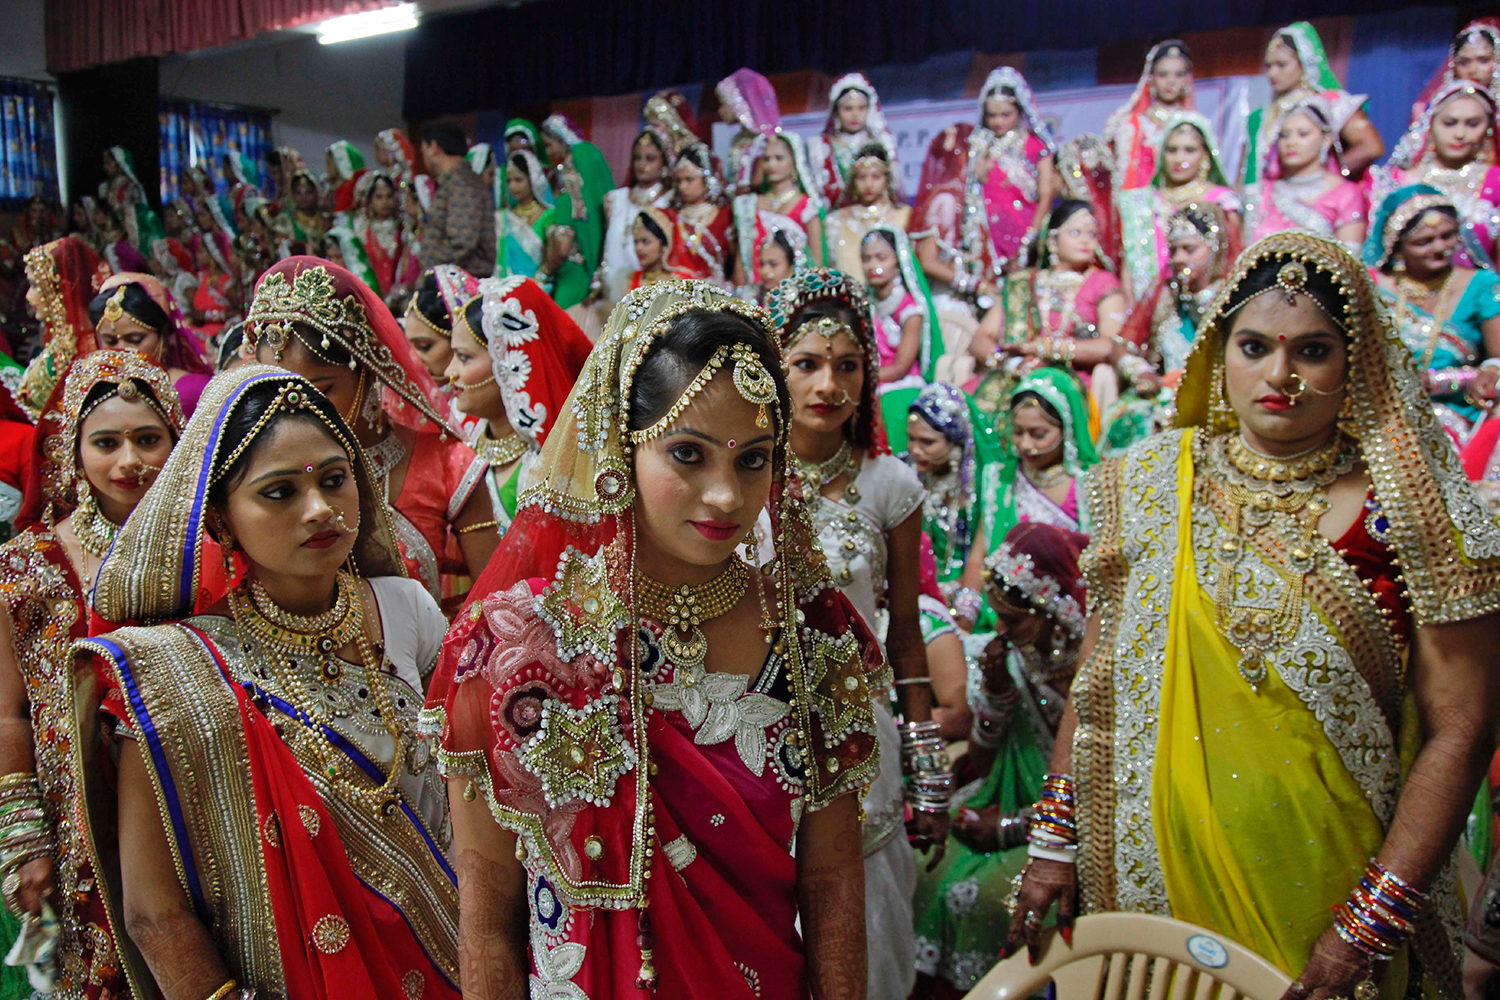 151 parejas se dan el "sí" en una boda masiva en la India